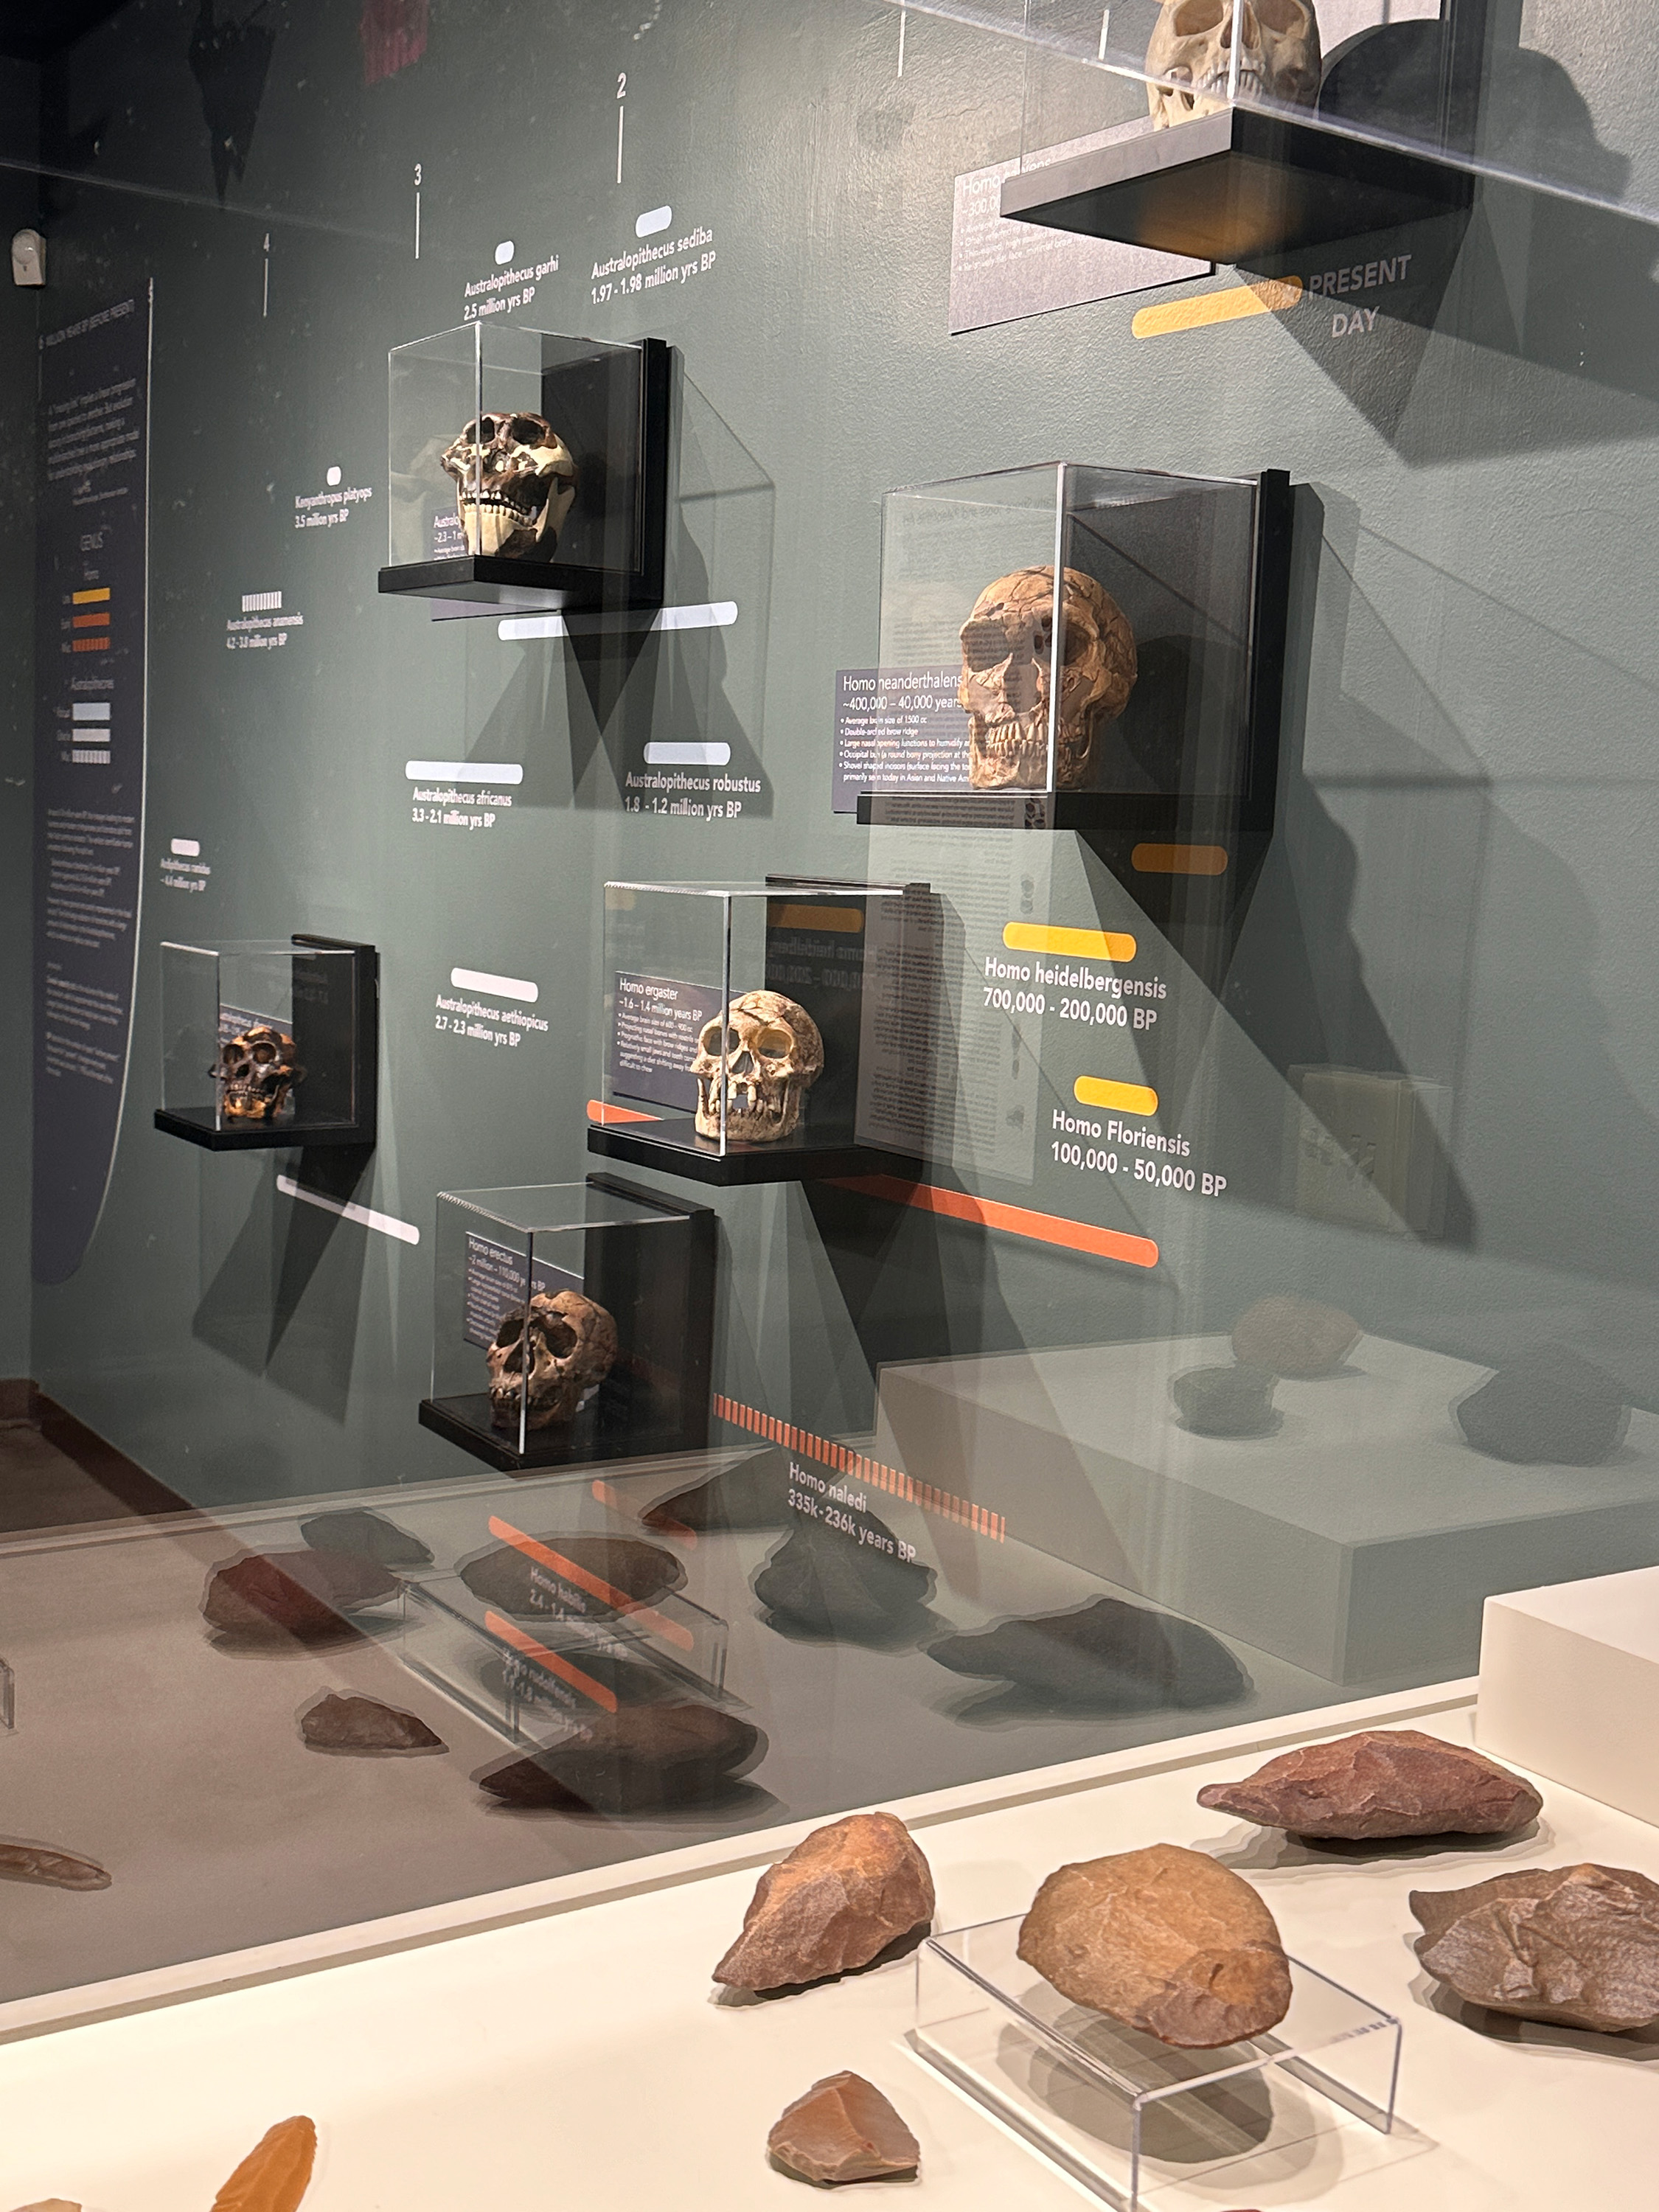 Human origins exhibit.